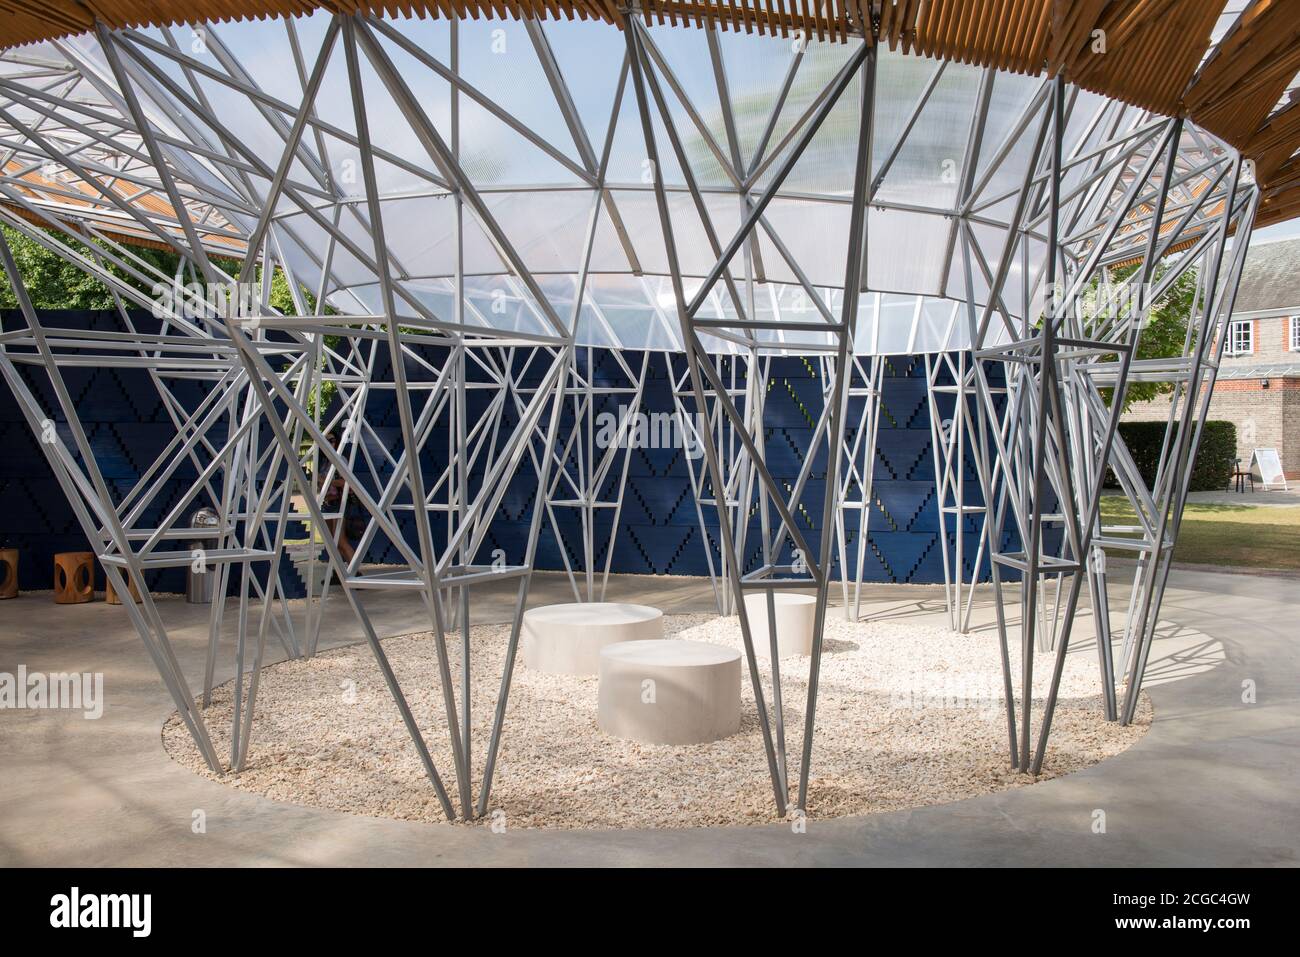 Der 2017 Serpentine Pavillon, eine temporäre Struktur aus Holz, in dunkelblauen und natürlichen Farben, organische Formen mit zentralen Innenhof. Stockfoto